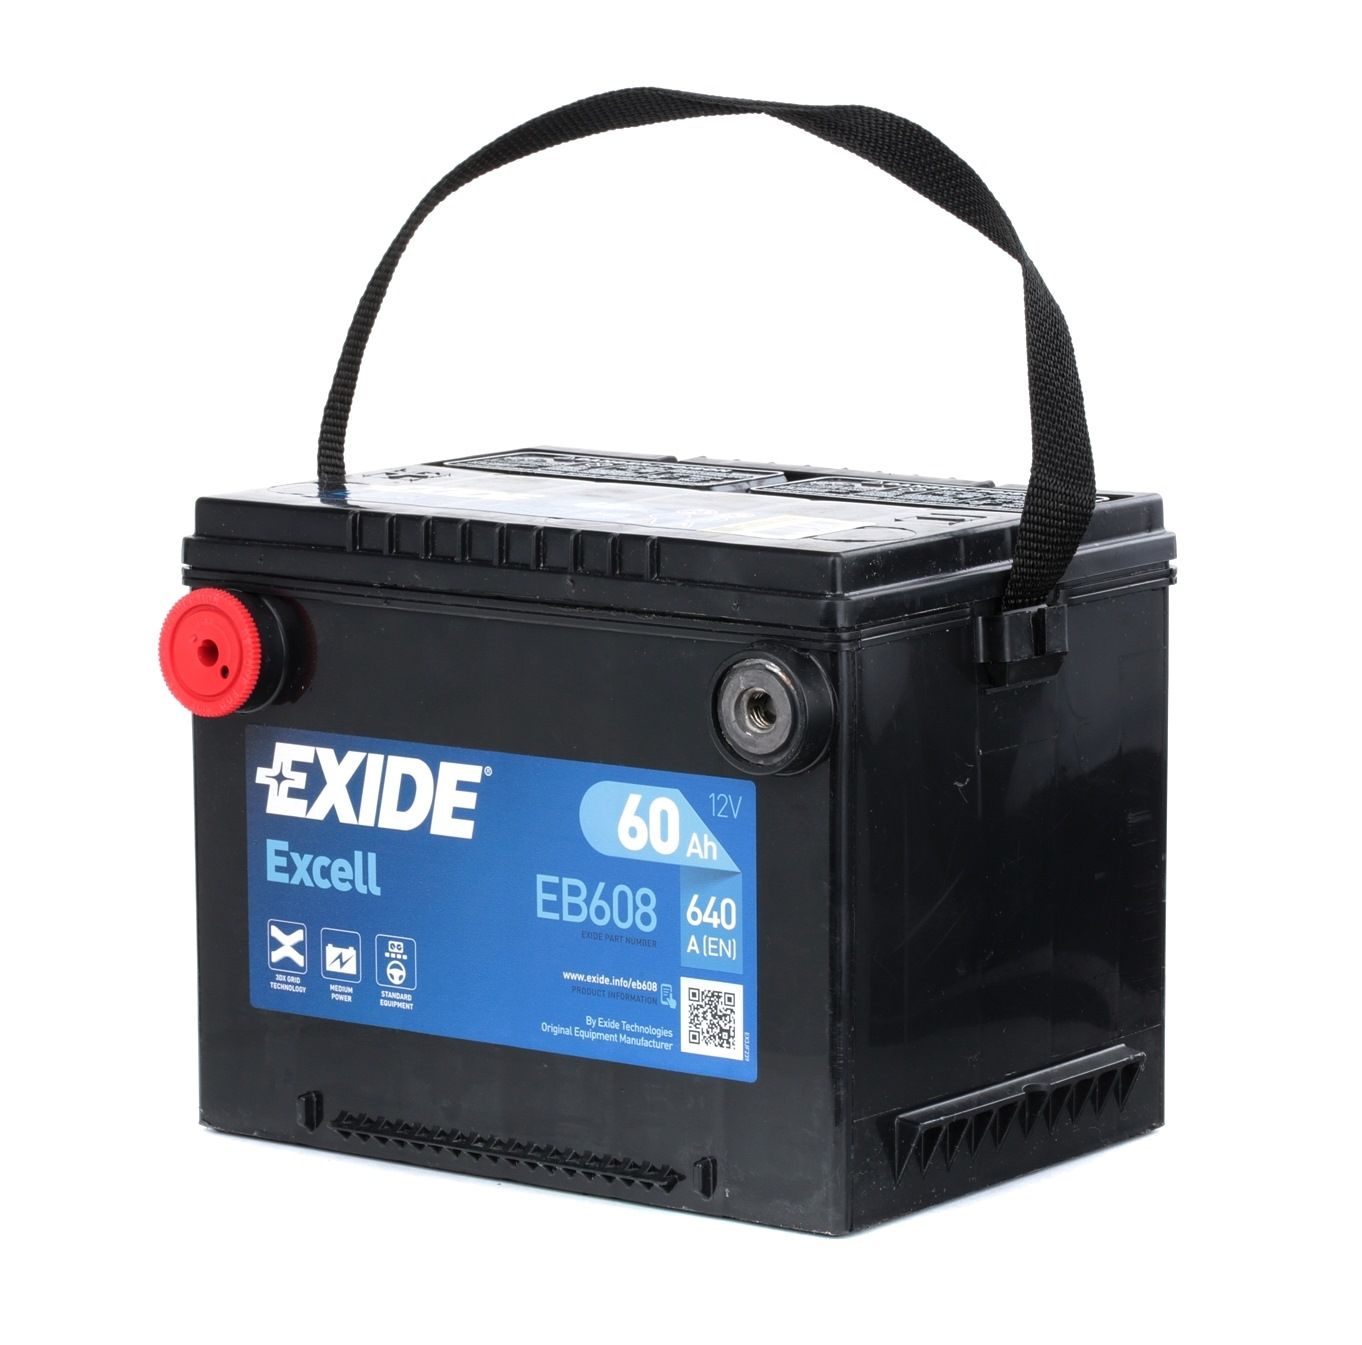 EXIDE EB608 Starter Battery